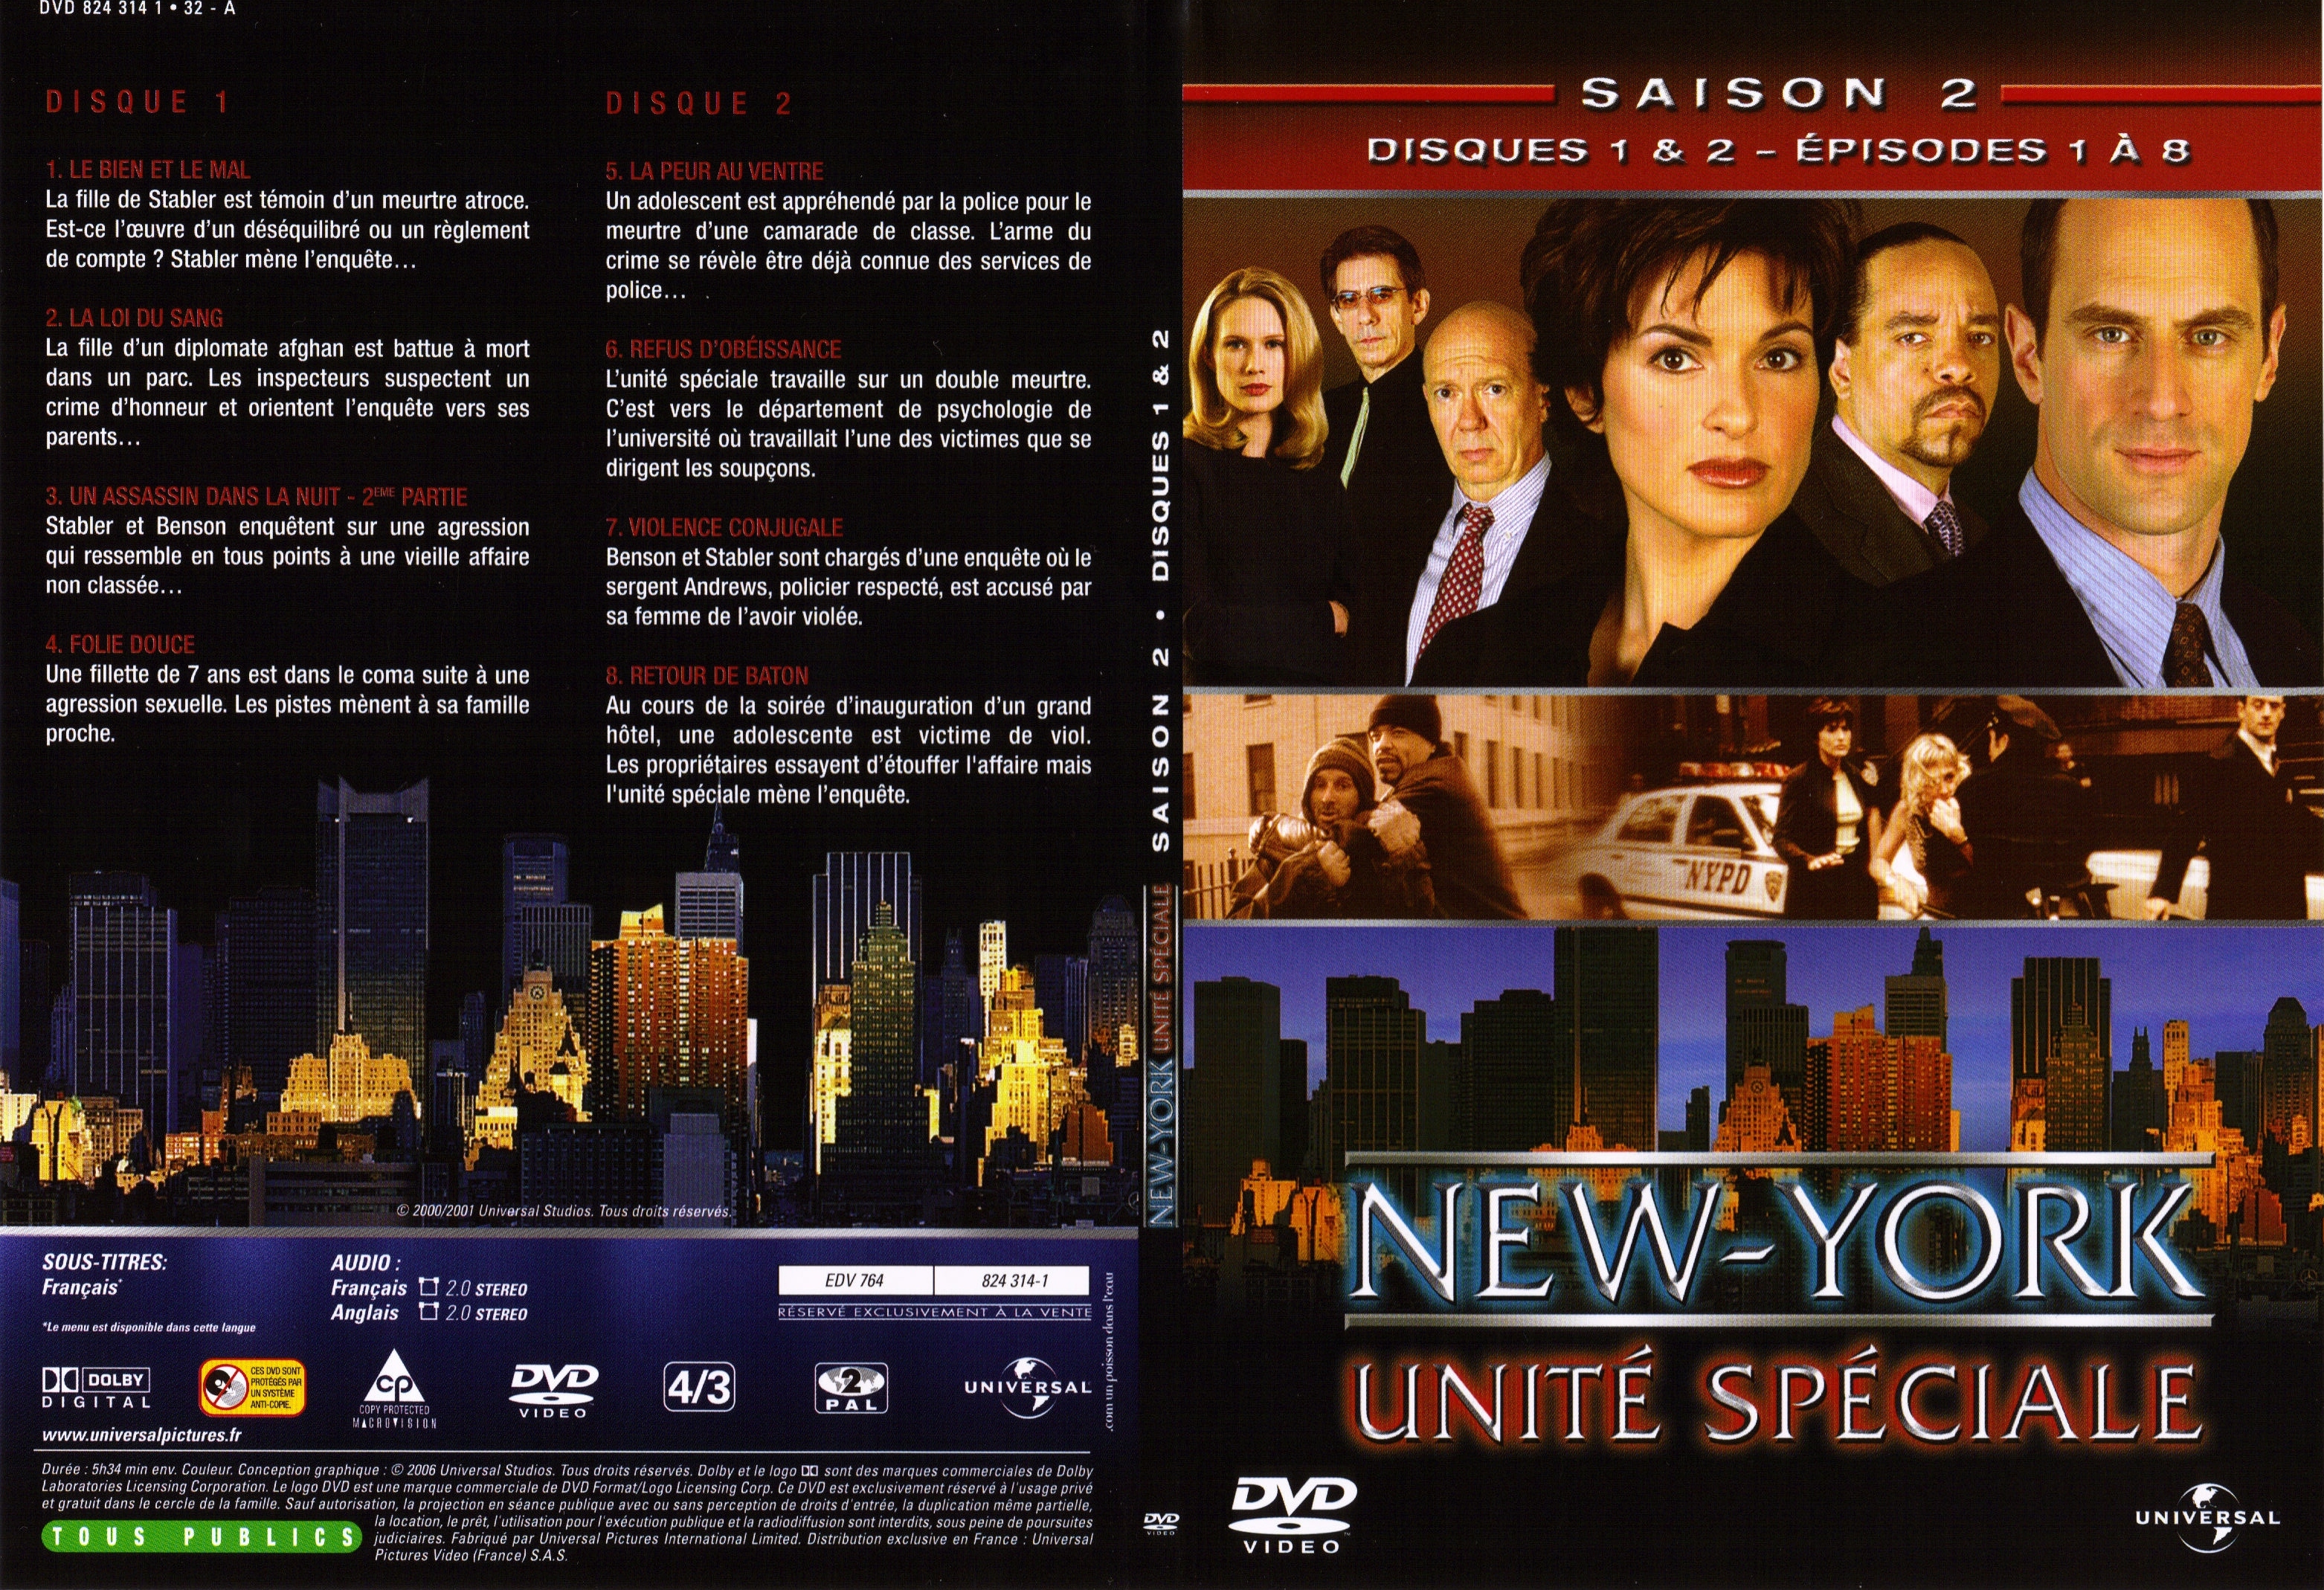 Jaquette DVD New York unit spciale saison 2 DVD 1